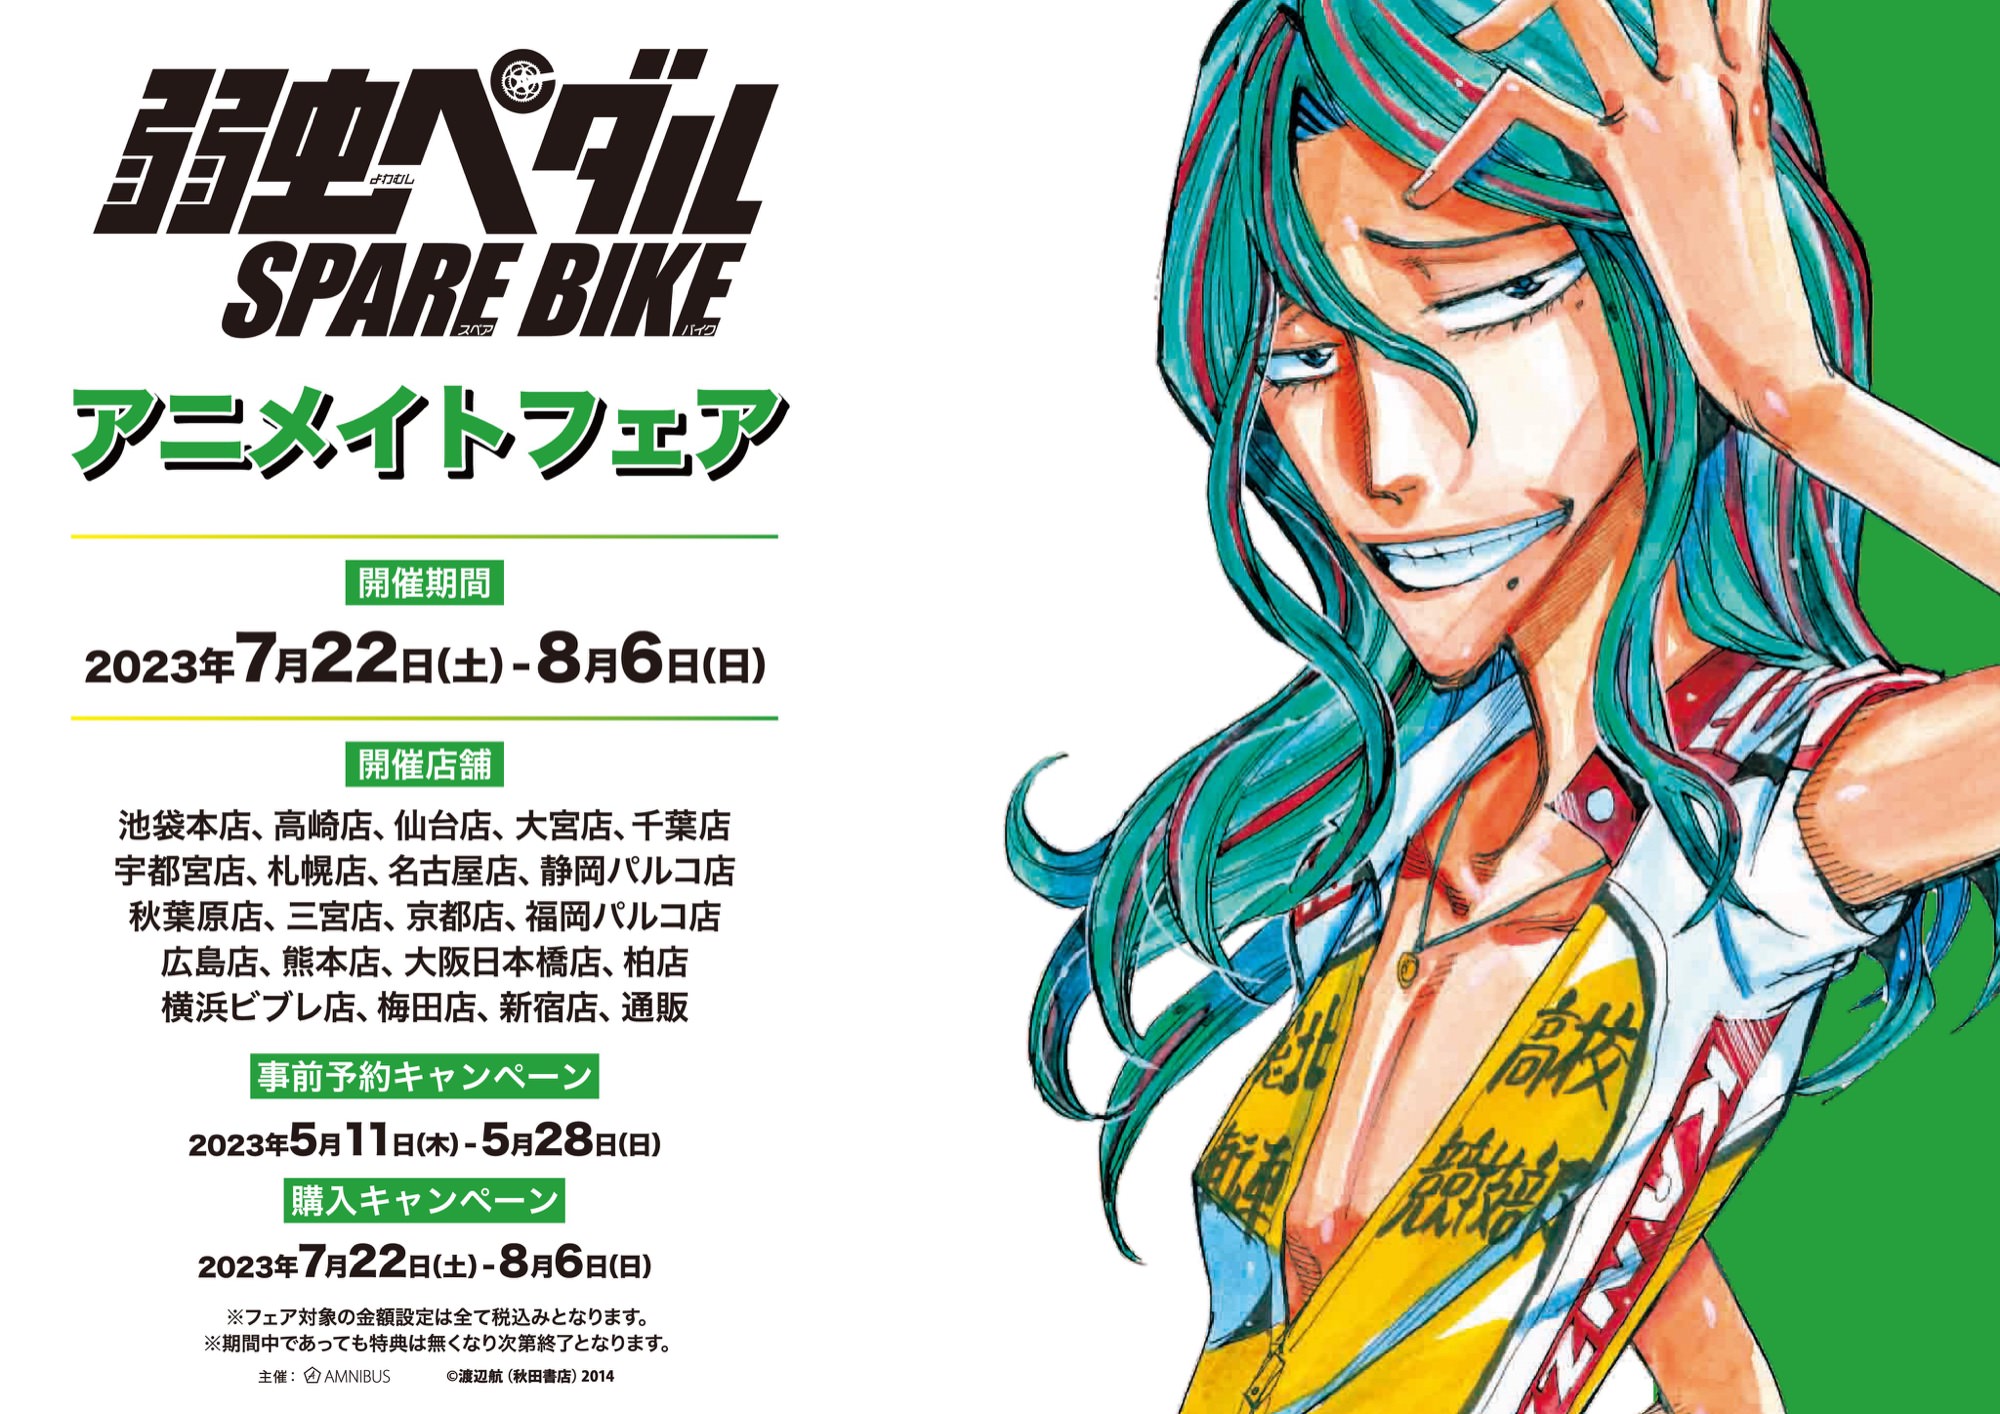 弱虫ペダル SPARE BIKEフェア in アニメイト 7月22日より開催!